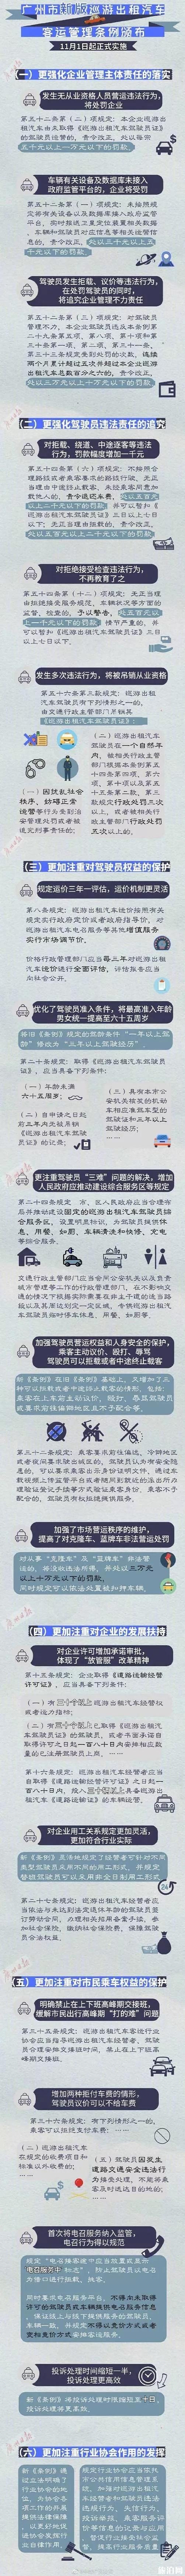 2019年11月广州哪几天不限行 广州出租车新规+公交线路调整